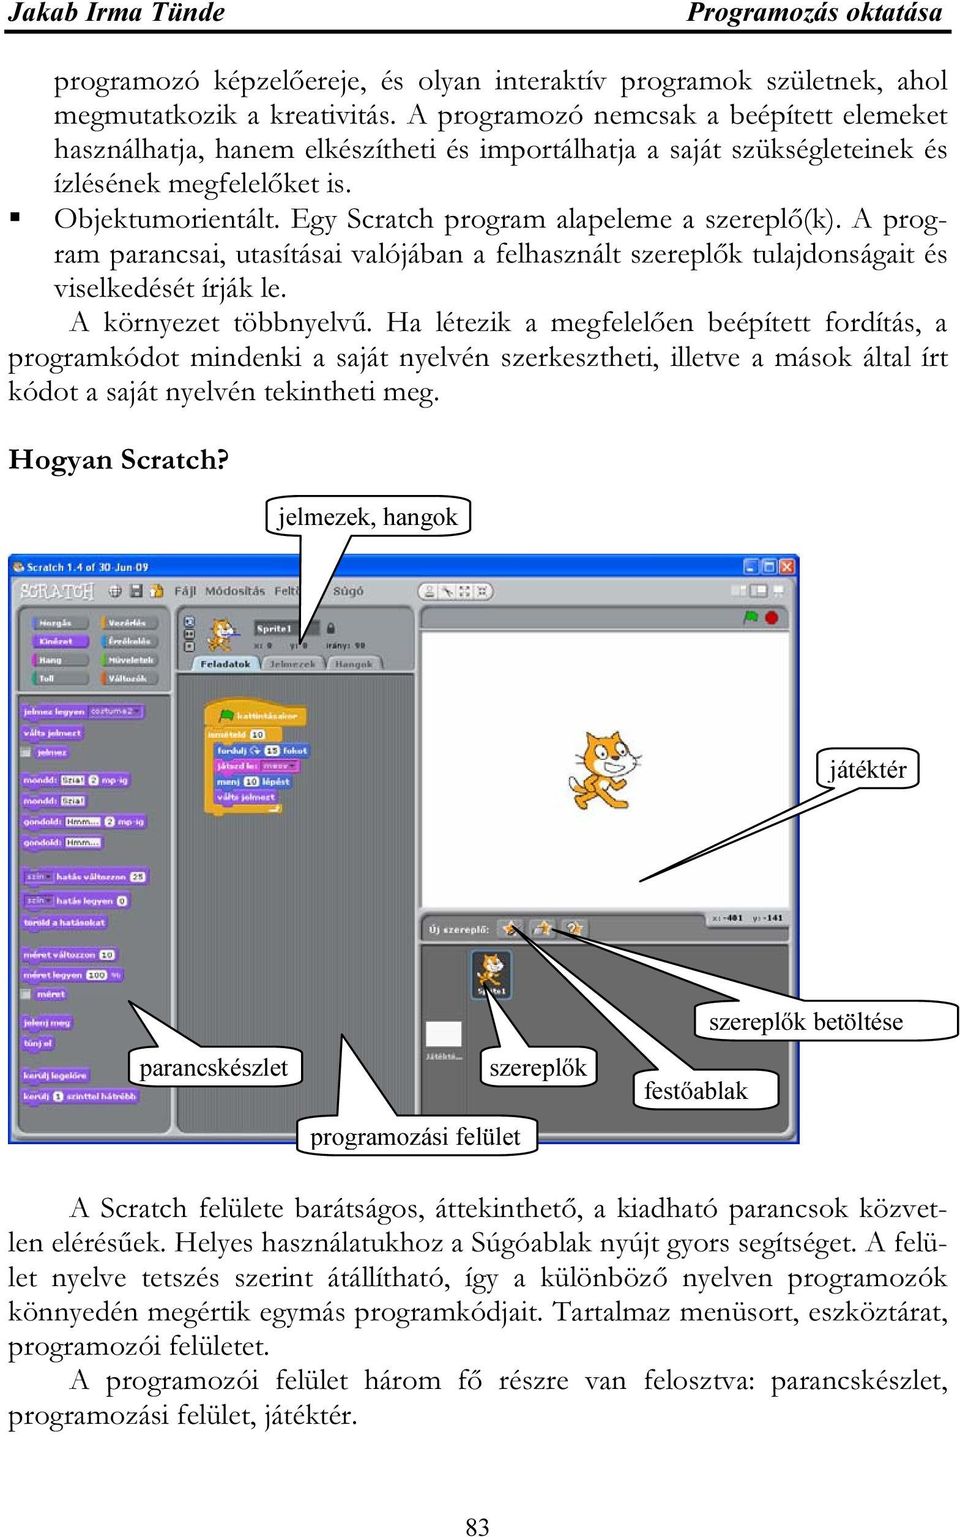 Egy Scratch program alapeleme a szereplő(k). A program parancsai, utasításai valójában a felhasznált szereplők tulajdonságait és viselkedését írják le. A környezet többnyelvű.